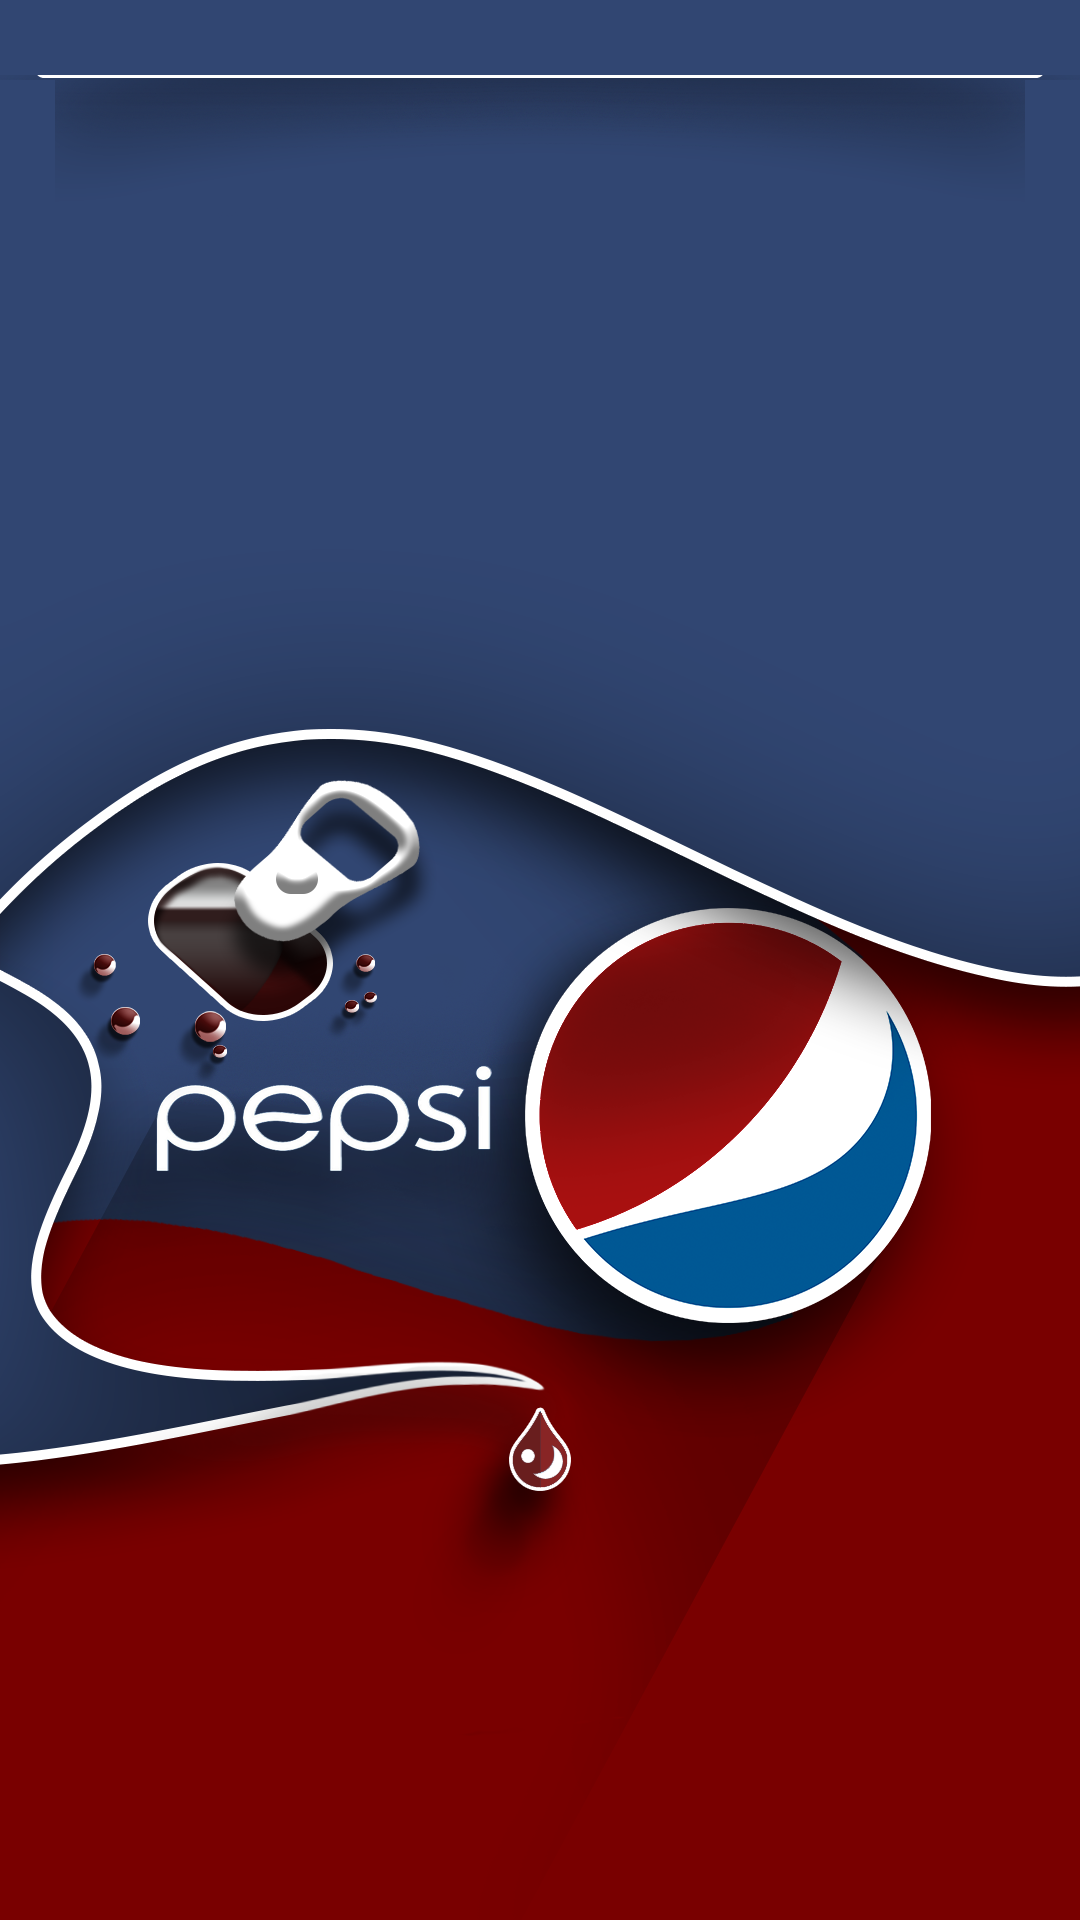 Pepsi Mobile Wallpaper